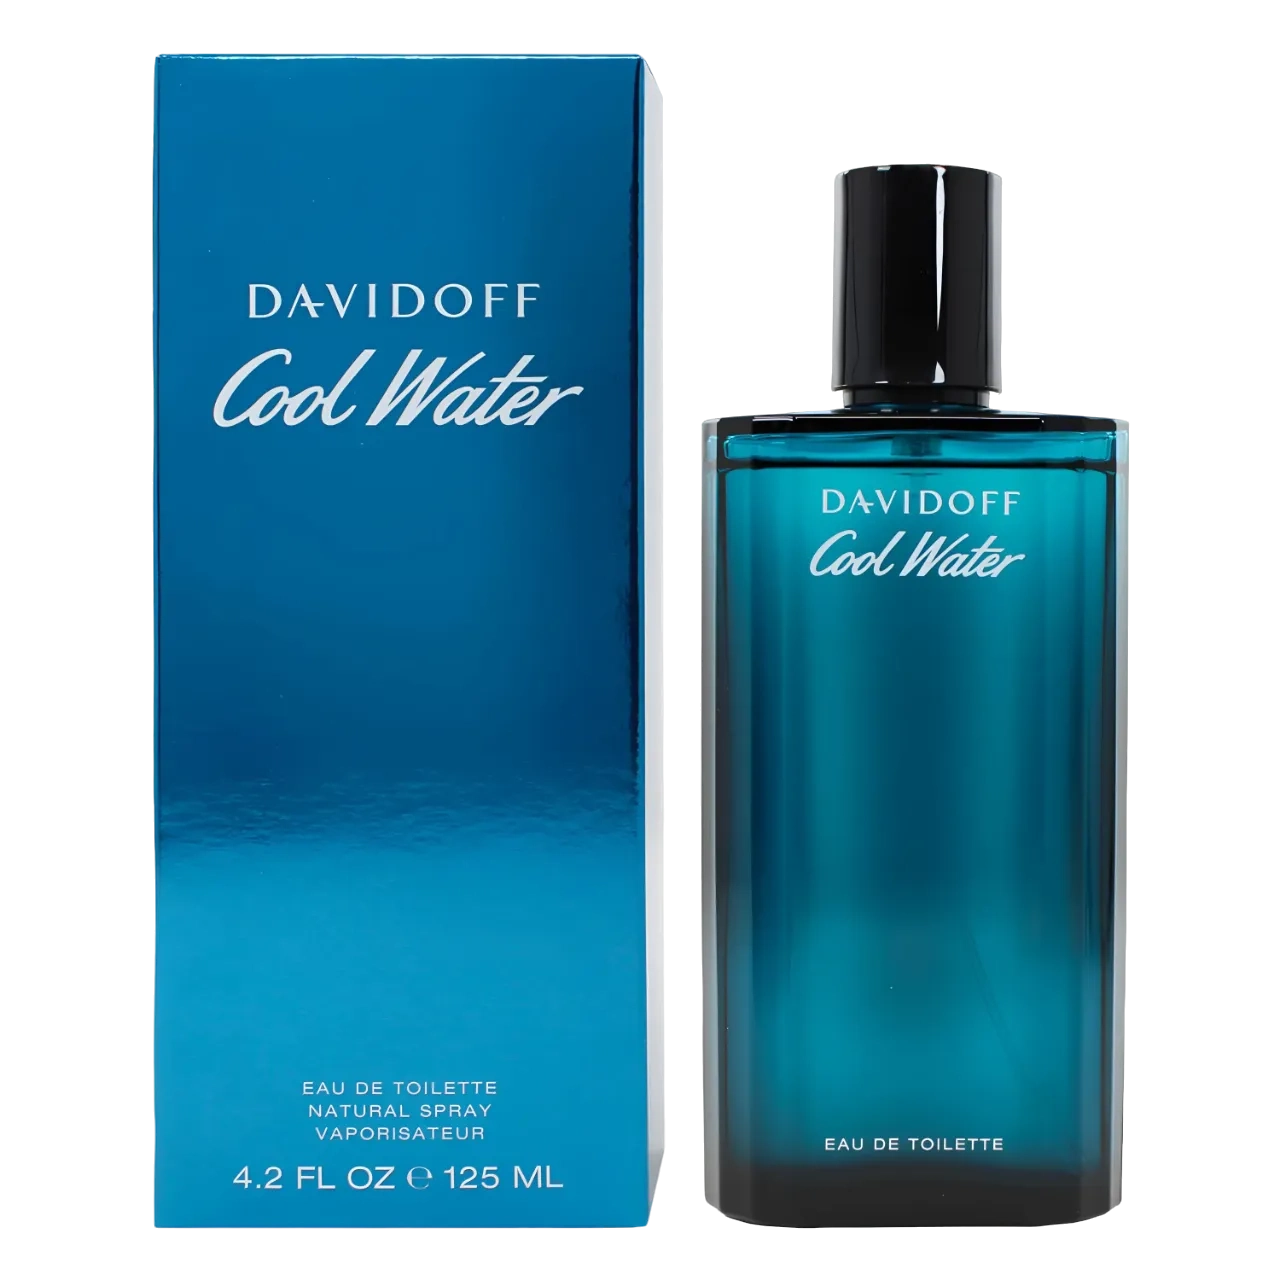 Davidoff Cool Water (m) Edt 125ml - B01F2LBFJ6 (JBIB36C9C)